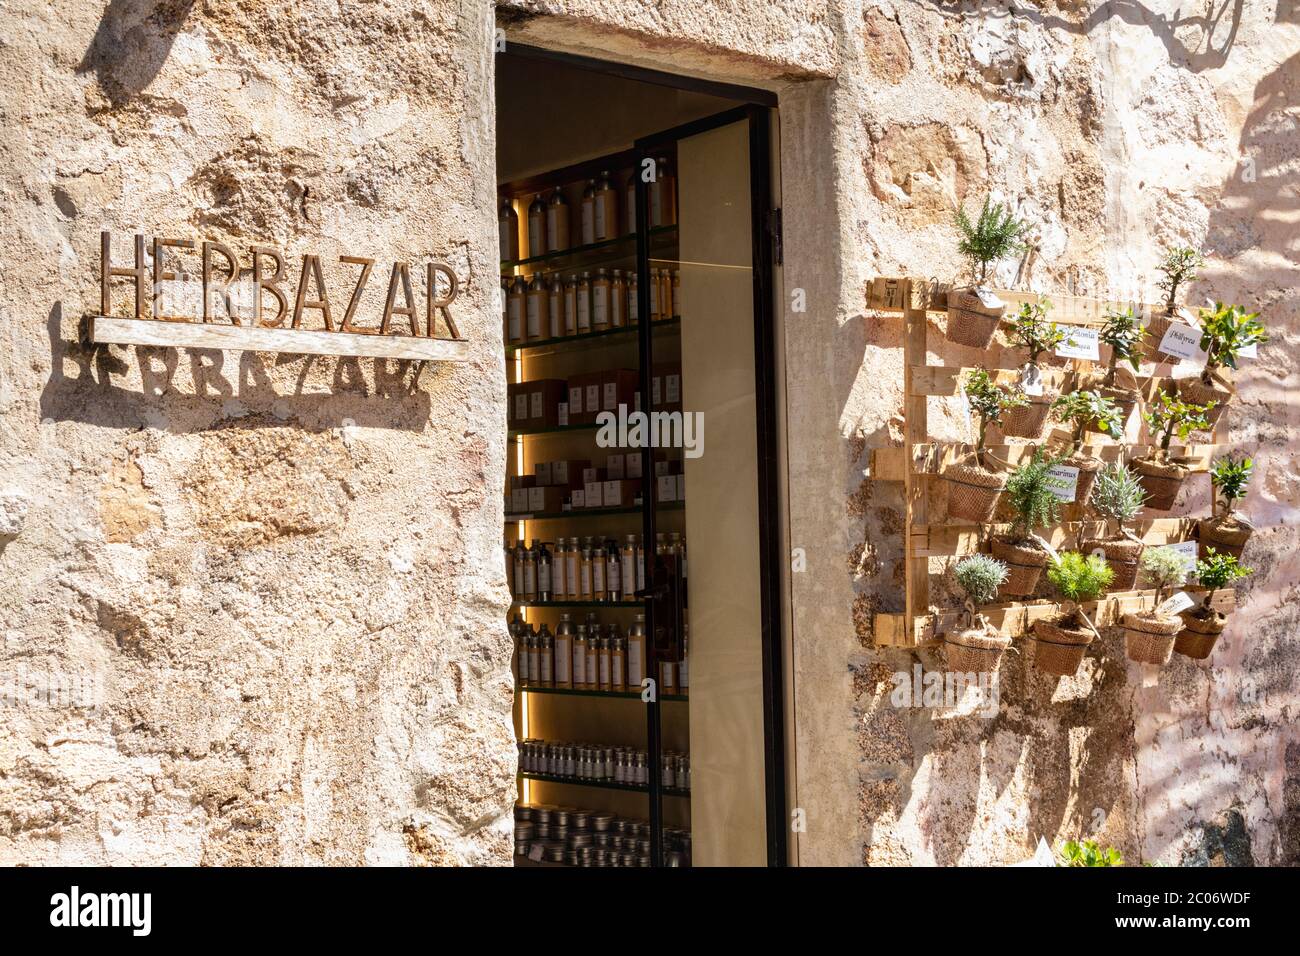 Eintritt in ein Kräuterladen in San Pantaleo, Behälter von Heilmittel Linie das Regal innerhalb der Tür und medizinische Pflanzen sind draußen ausgestellt. Stockfoto